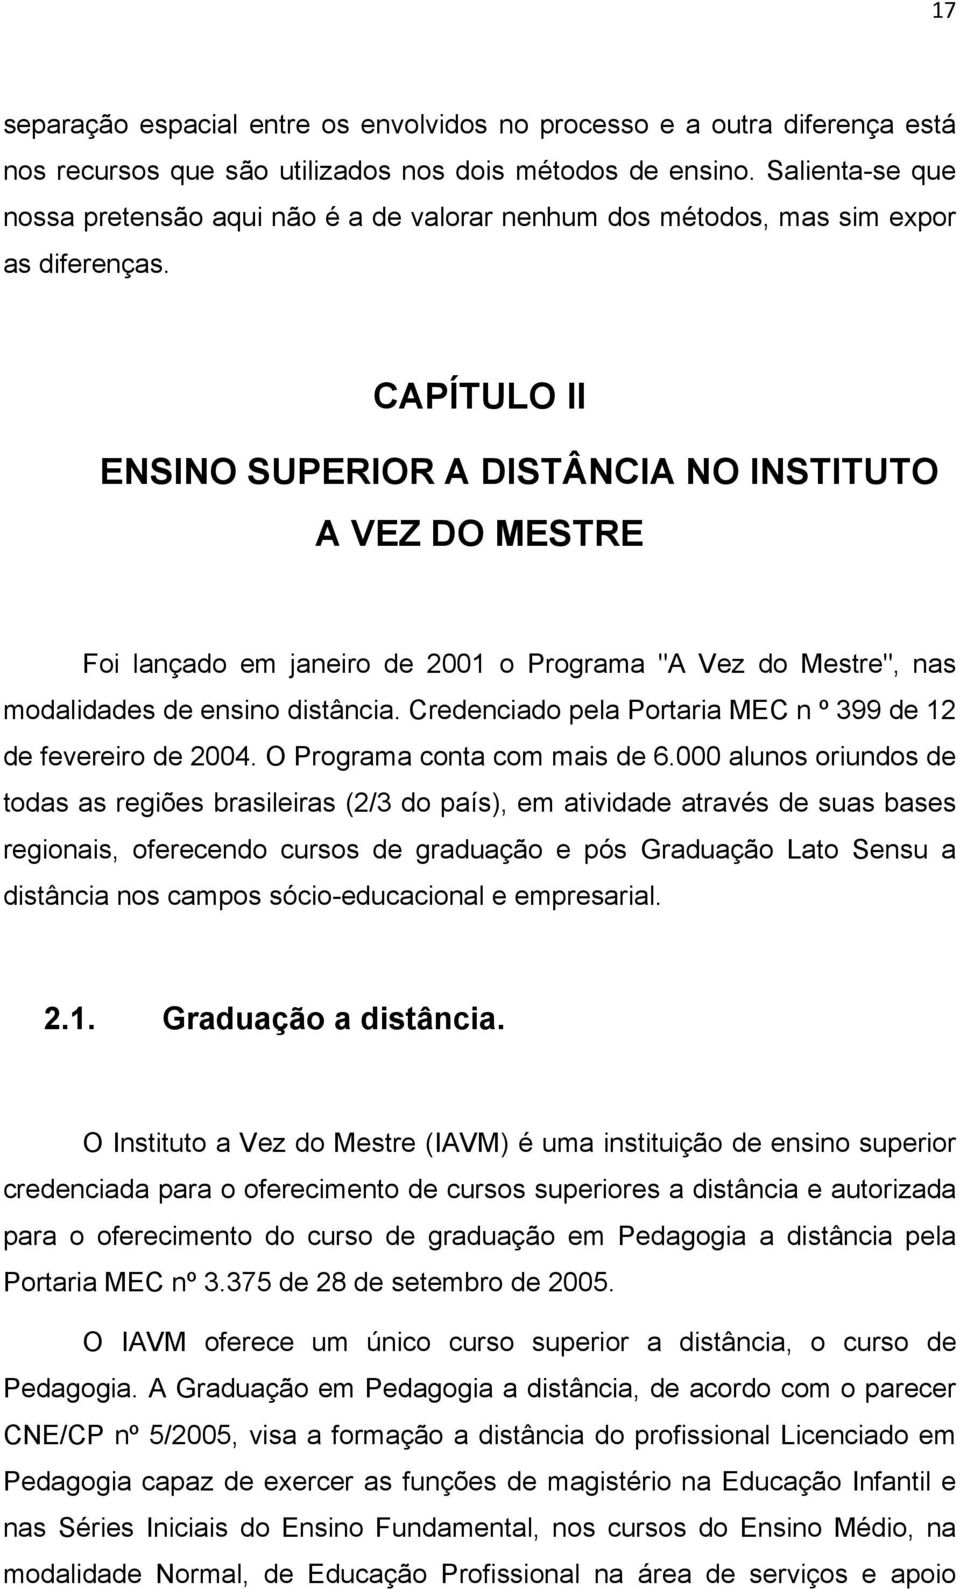 ENSINO SUPERIOR A DISTÂNCIA NO INSTITUTO A VEZ DO MESTRE Foi lançado em janeiro de 2001 o Programa "A Vez do Mestre", nas modalidades de ensino distância.